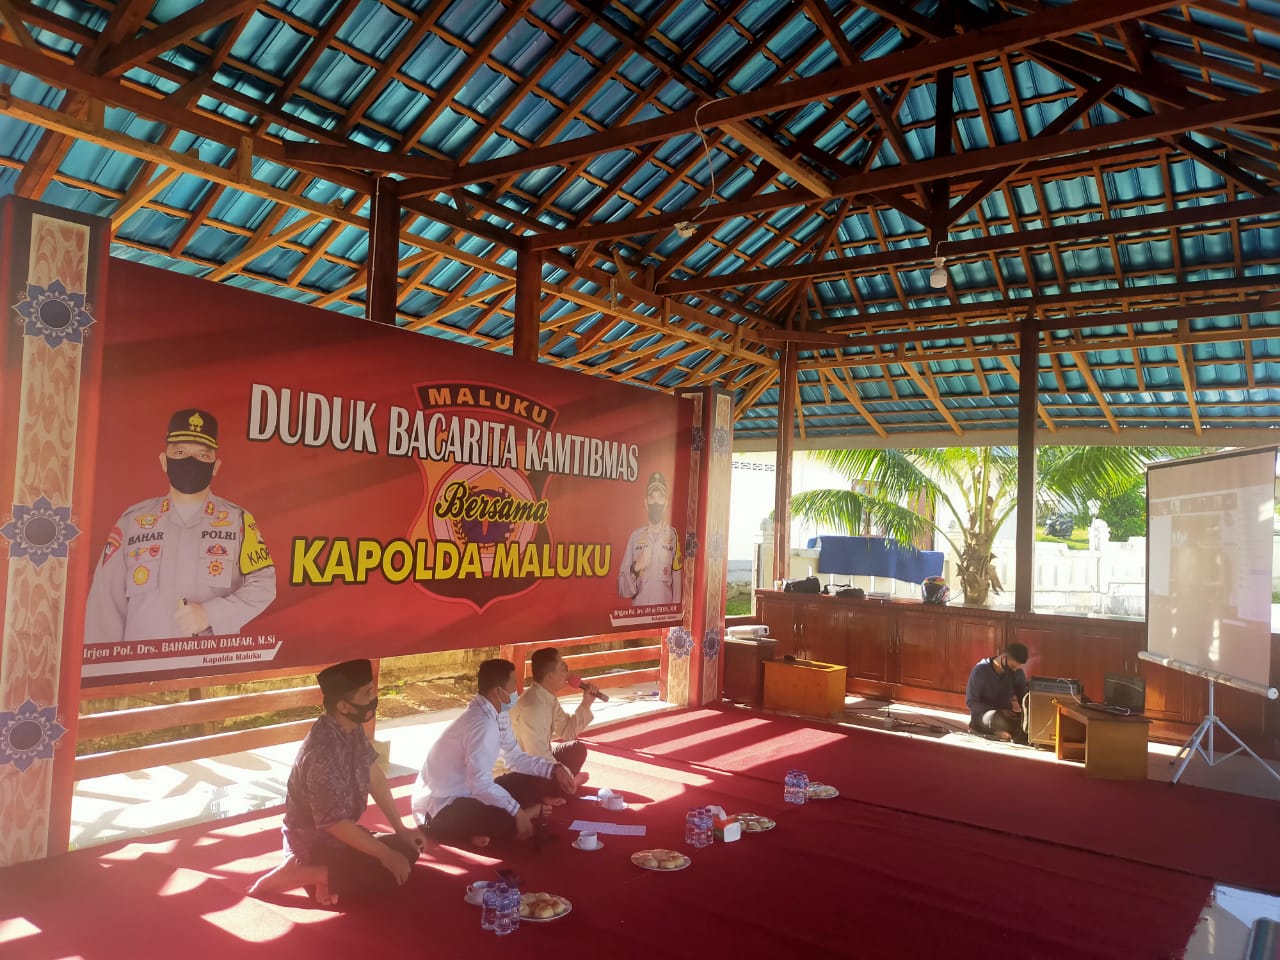 Polda Maluku Gelar Dudu Bacarita Kamtibmas, Bahas Soal Permasalahan Yang Kompleks di Tengah Masyarakat